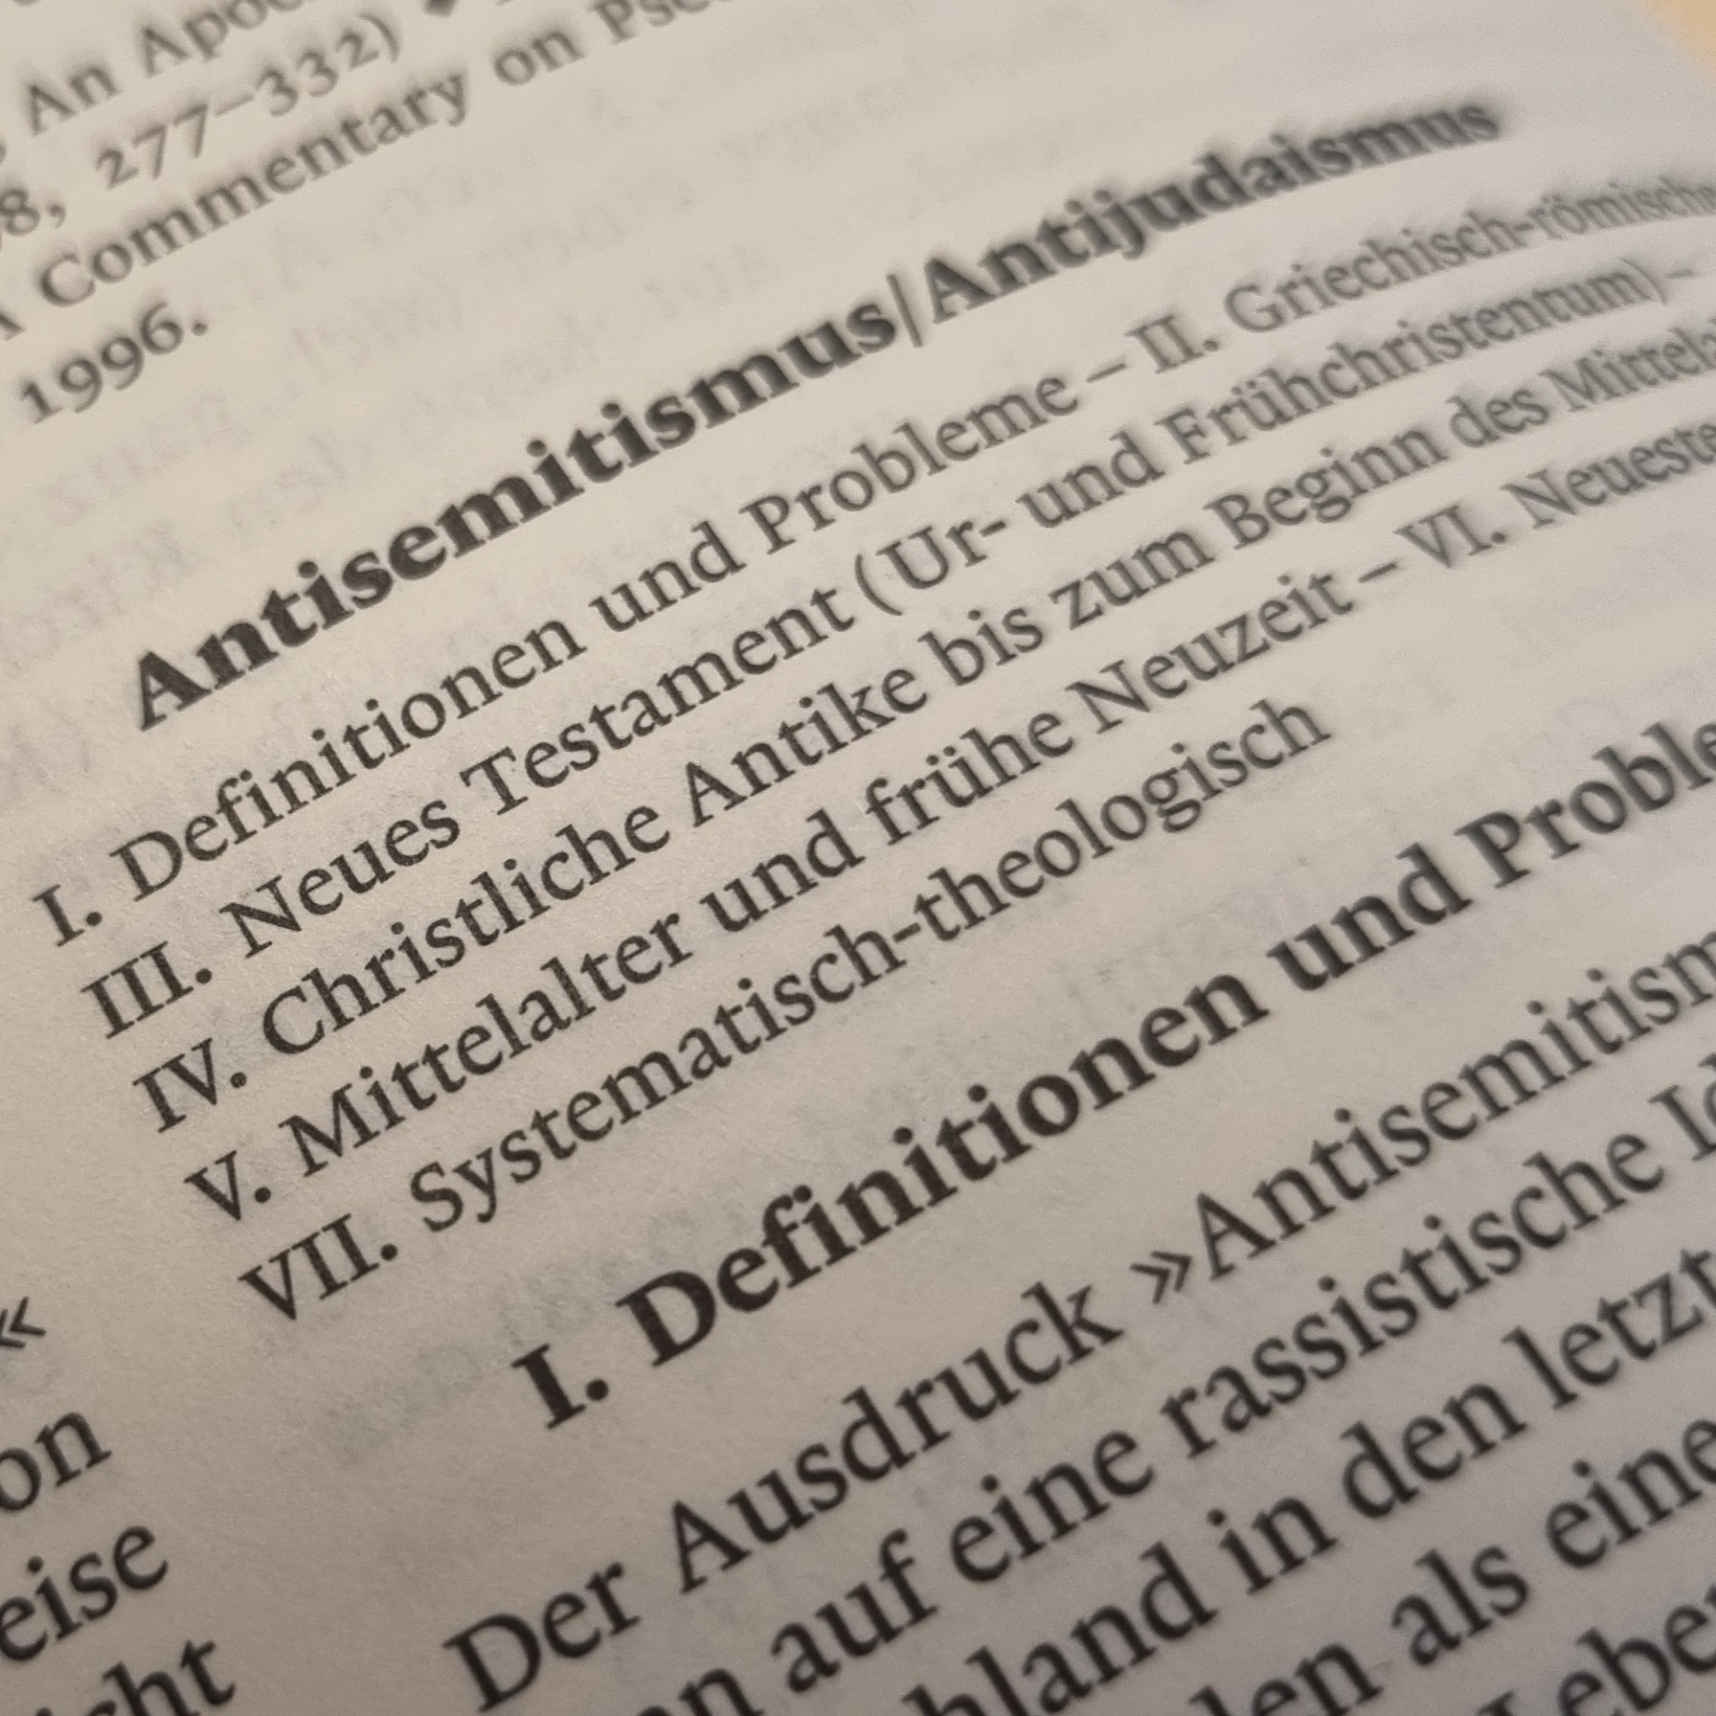 Das Bild zeigt einen Ausschnitt aus einem Lexikoneintrag zum Thema Antisemitismus.